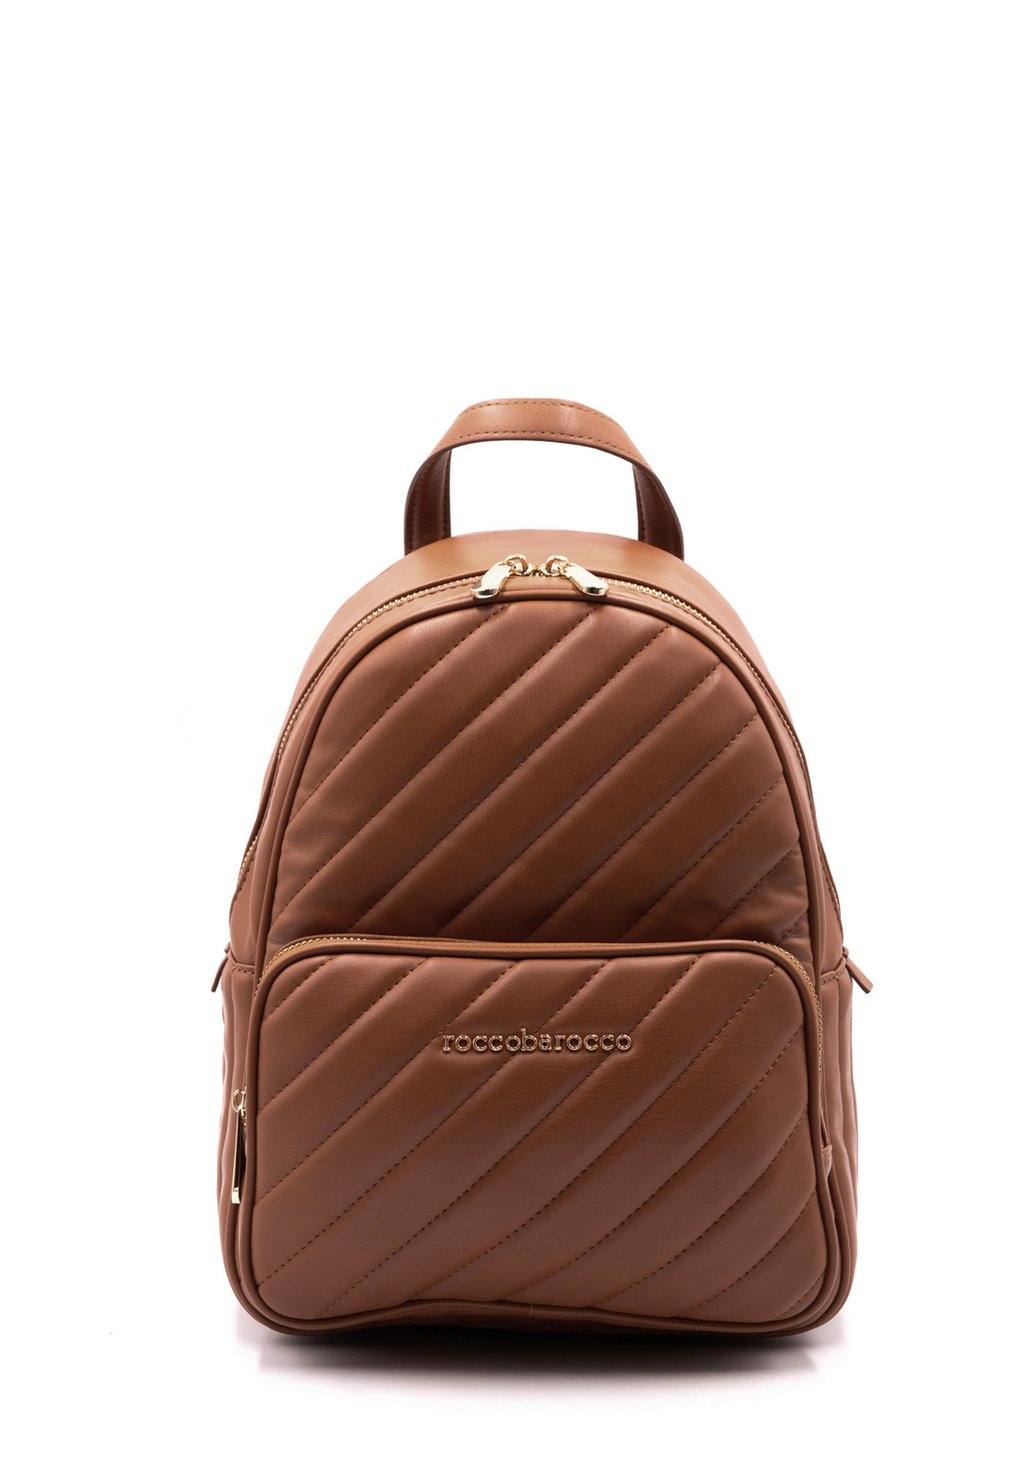 Рюкзак Glam Roccobarocco, коричневый рюкзак roccobarocco rbrb8204 коричневый